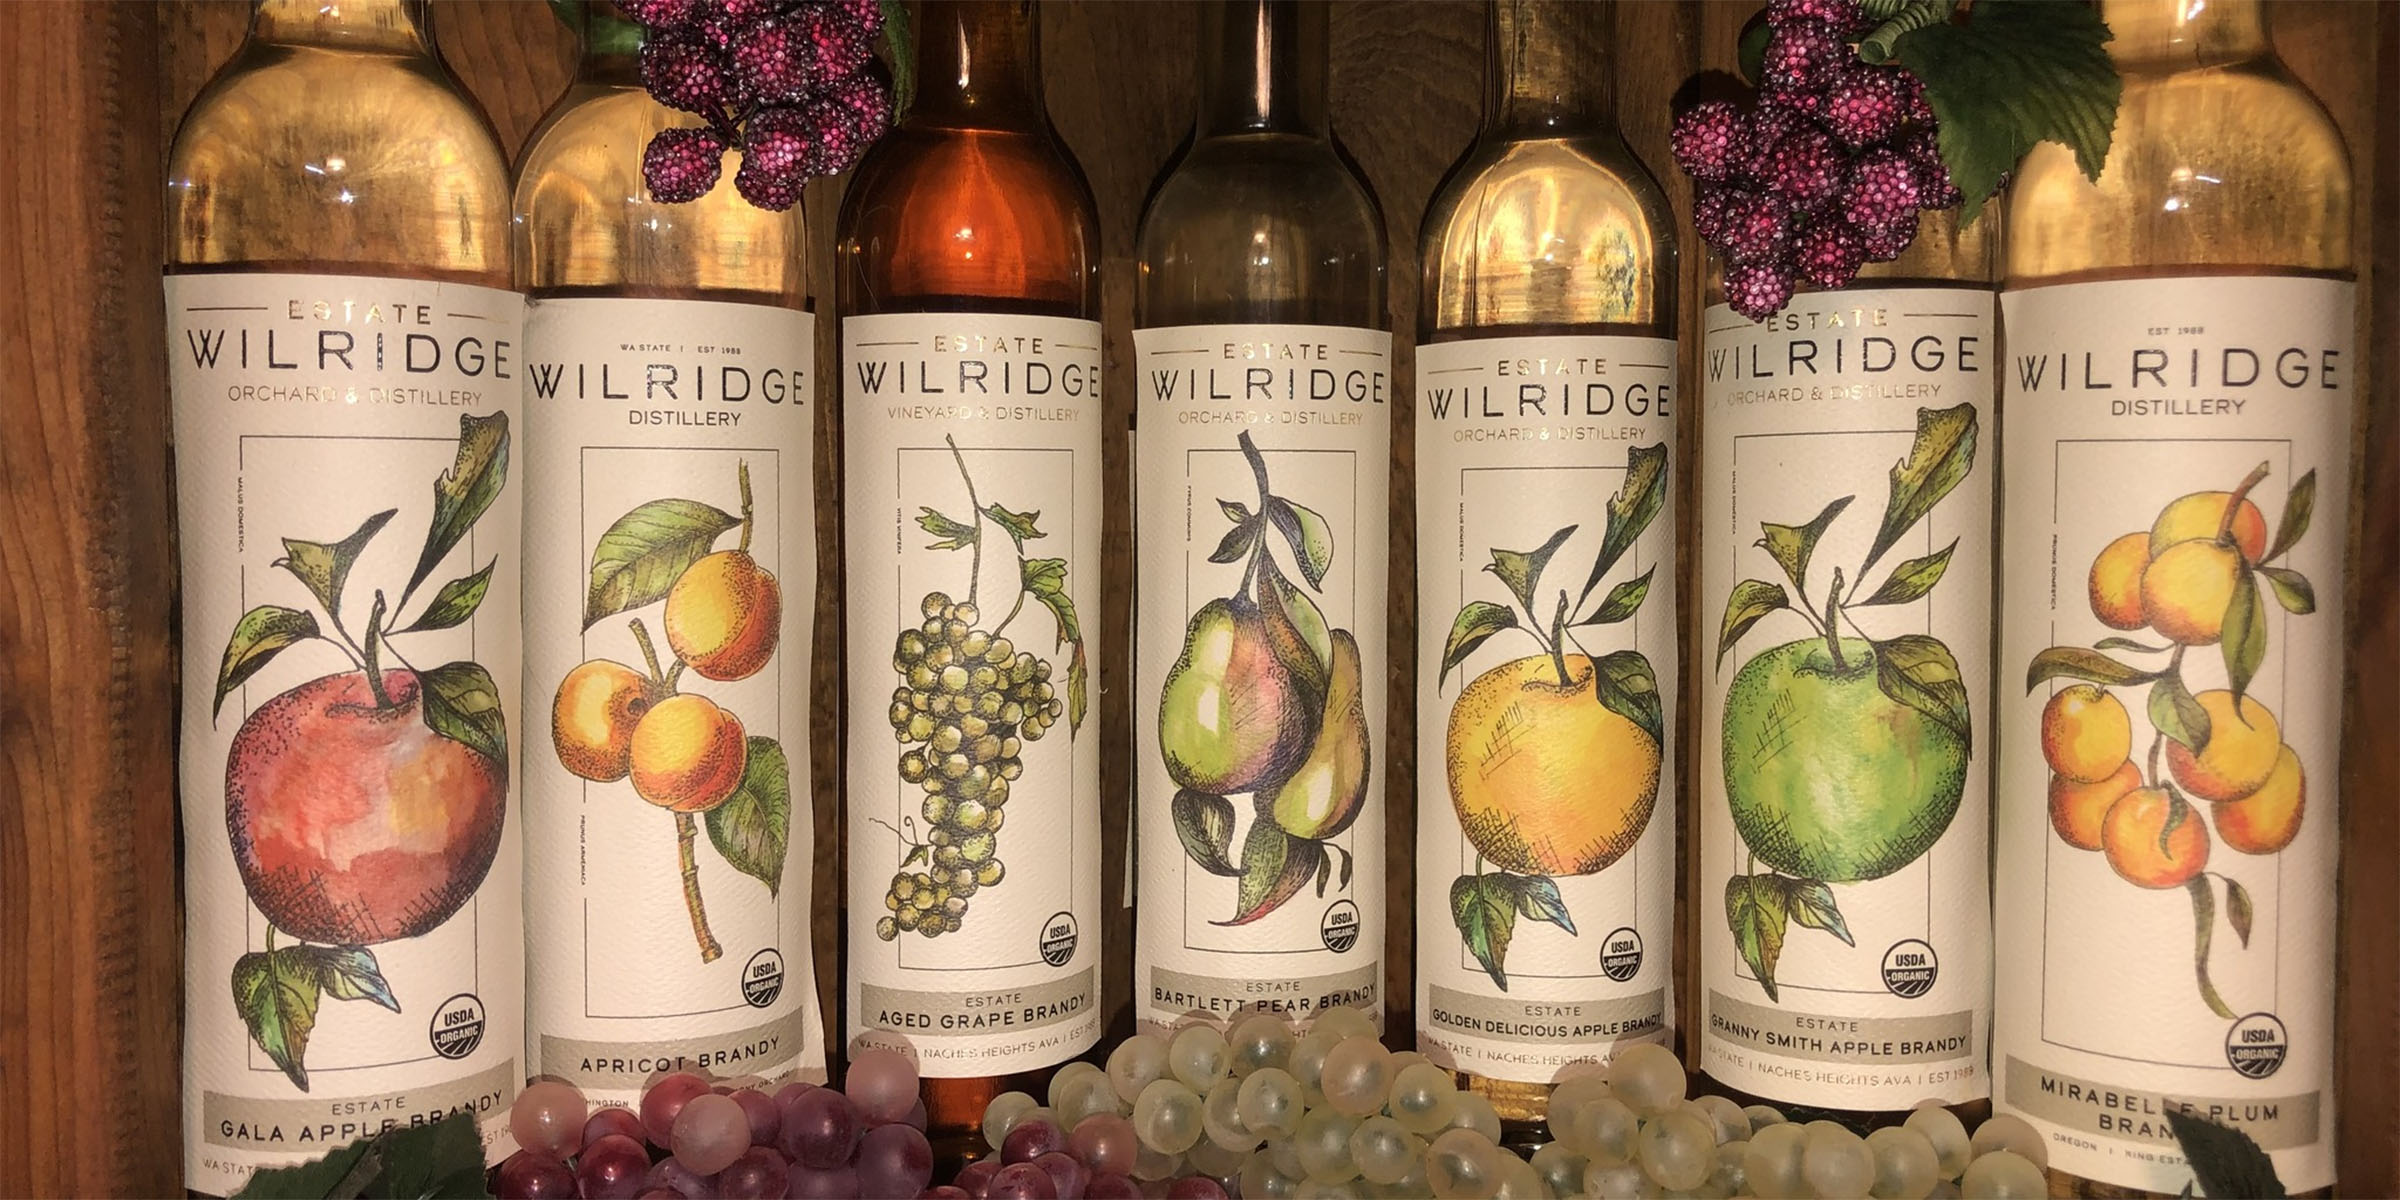 Bottles of Wilridge wine